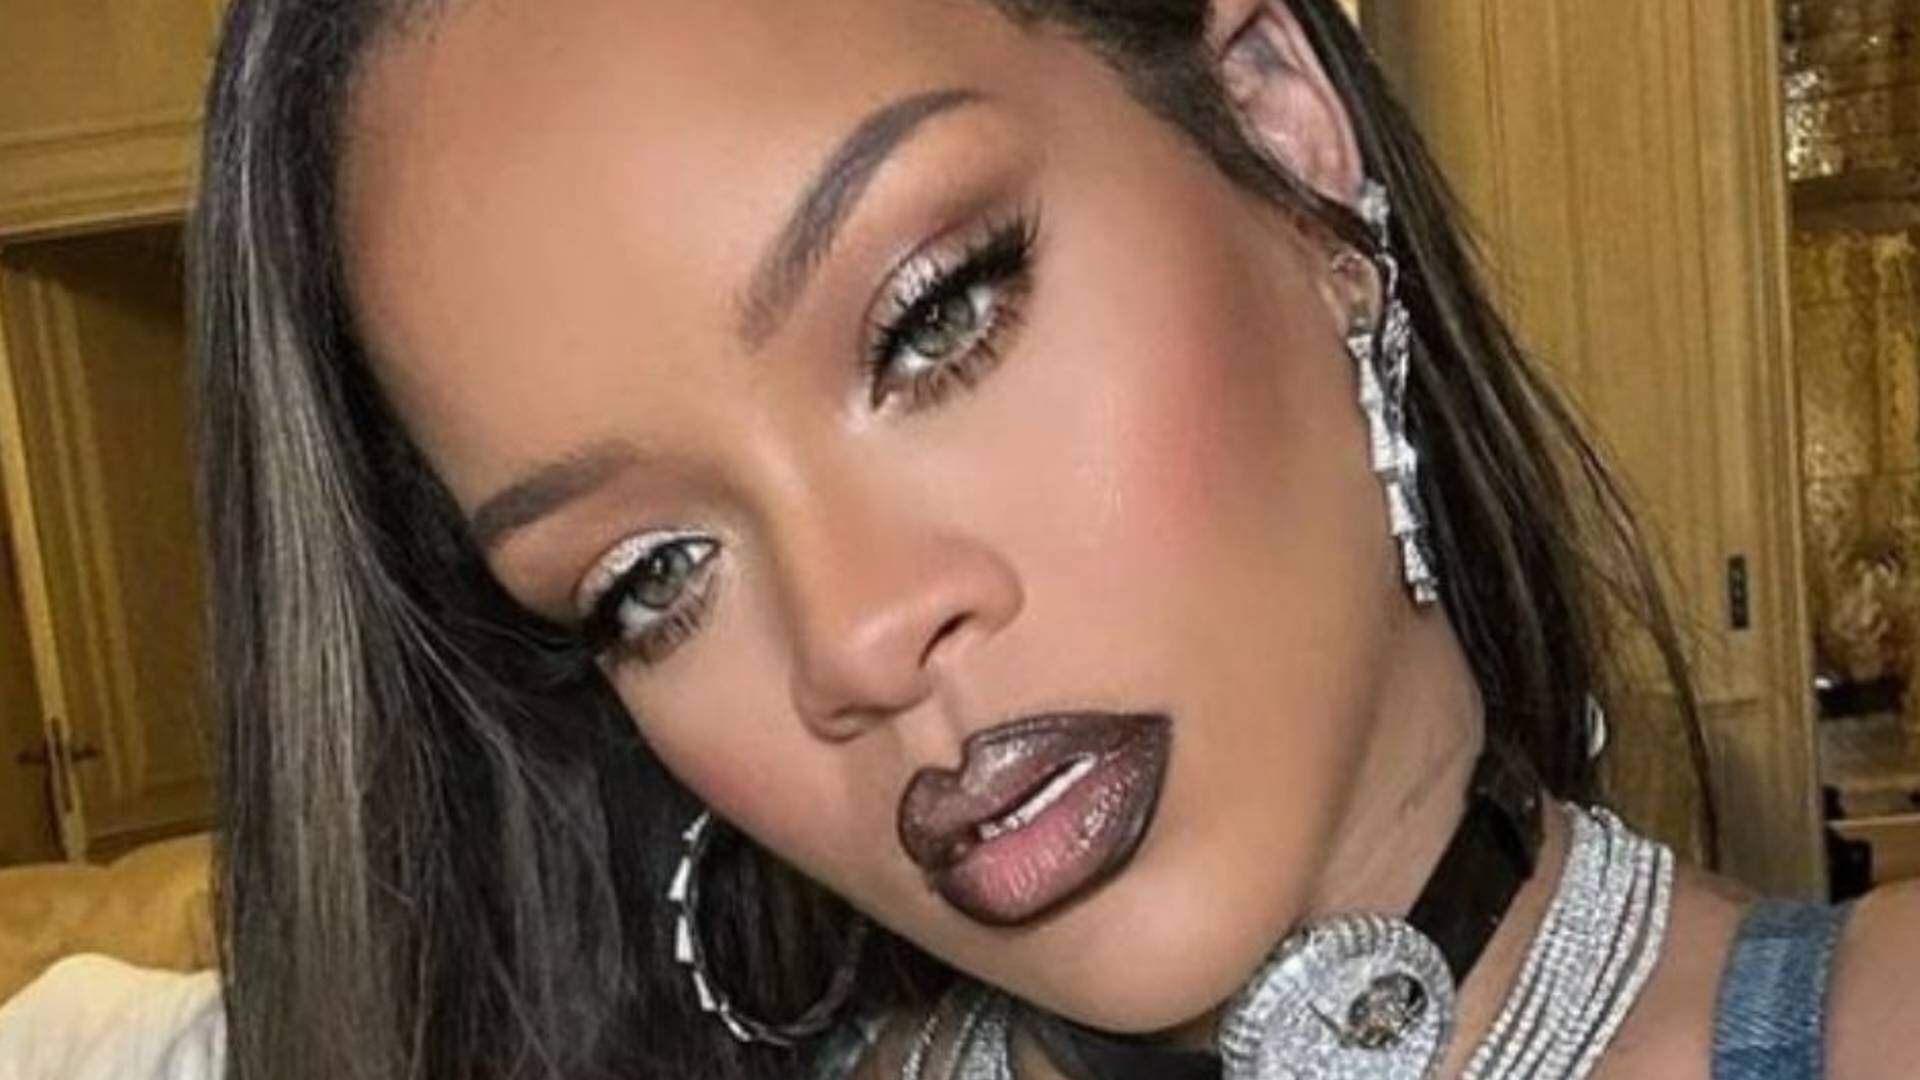 Grávida, Rihanna rouba a cena após ter atitude incomum em festa e dá o que falar na web